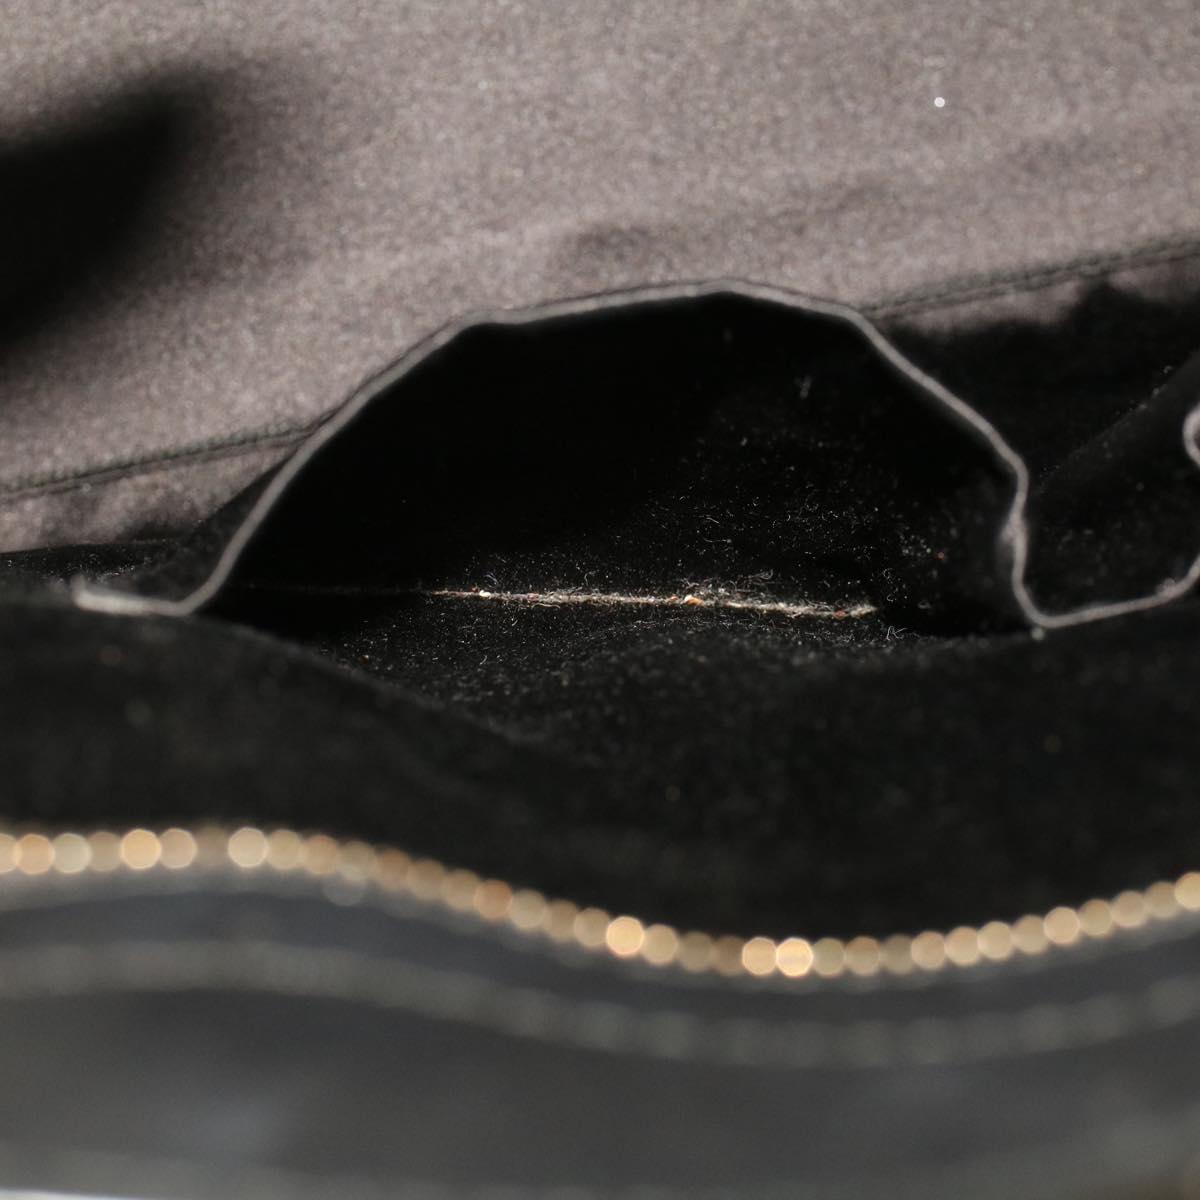 SAINT LAURENT Hand Bag Leather Black 274759 486628 Auth am4308